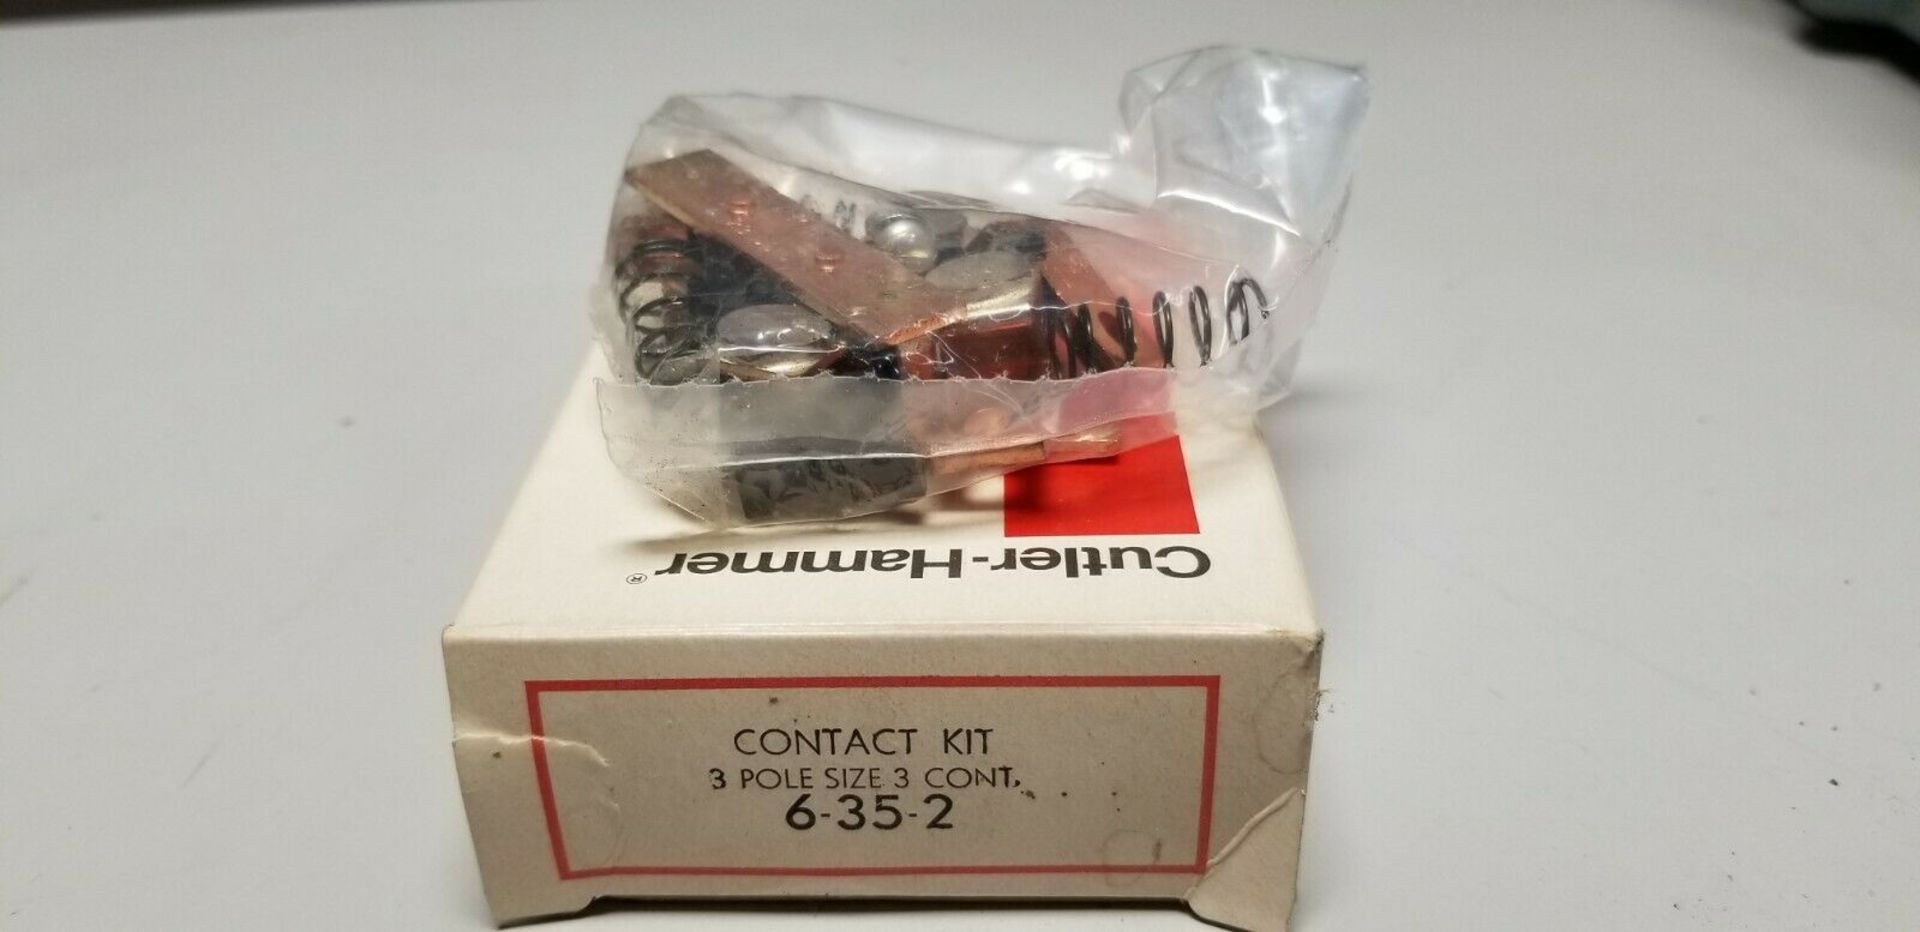 New Cutler Hammer Contact Kit 6-35-2